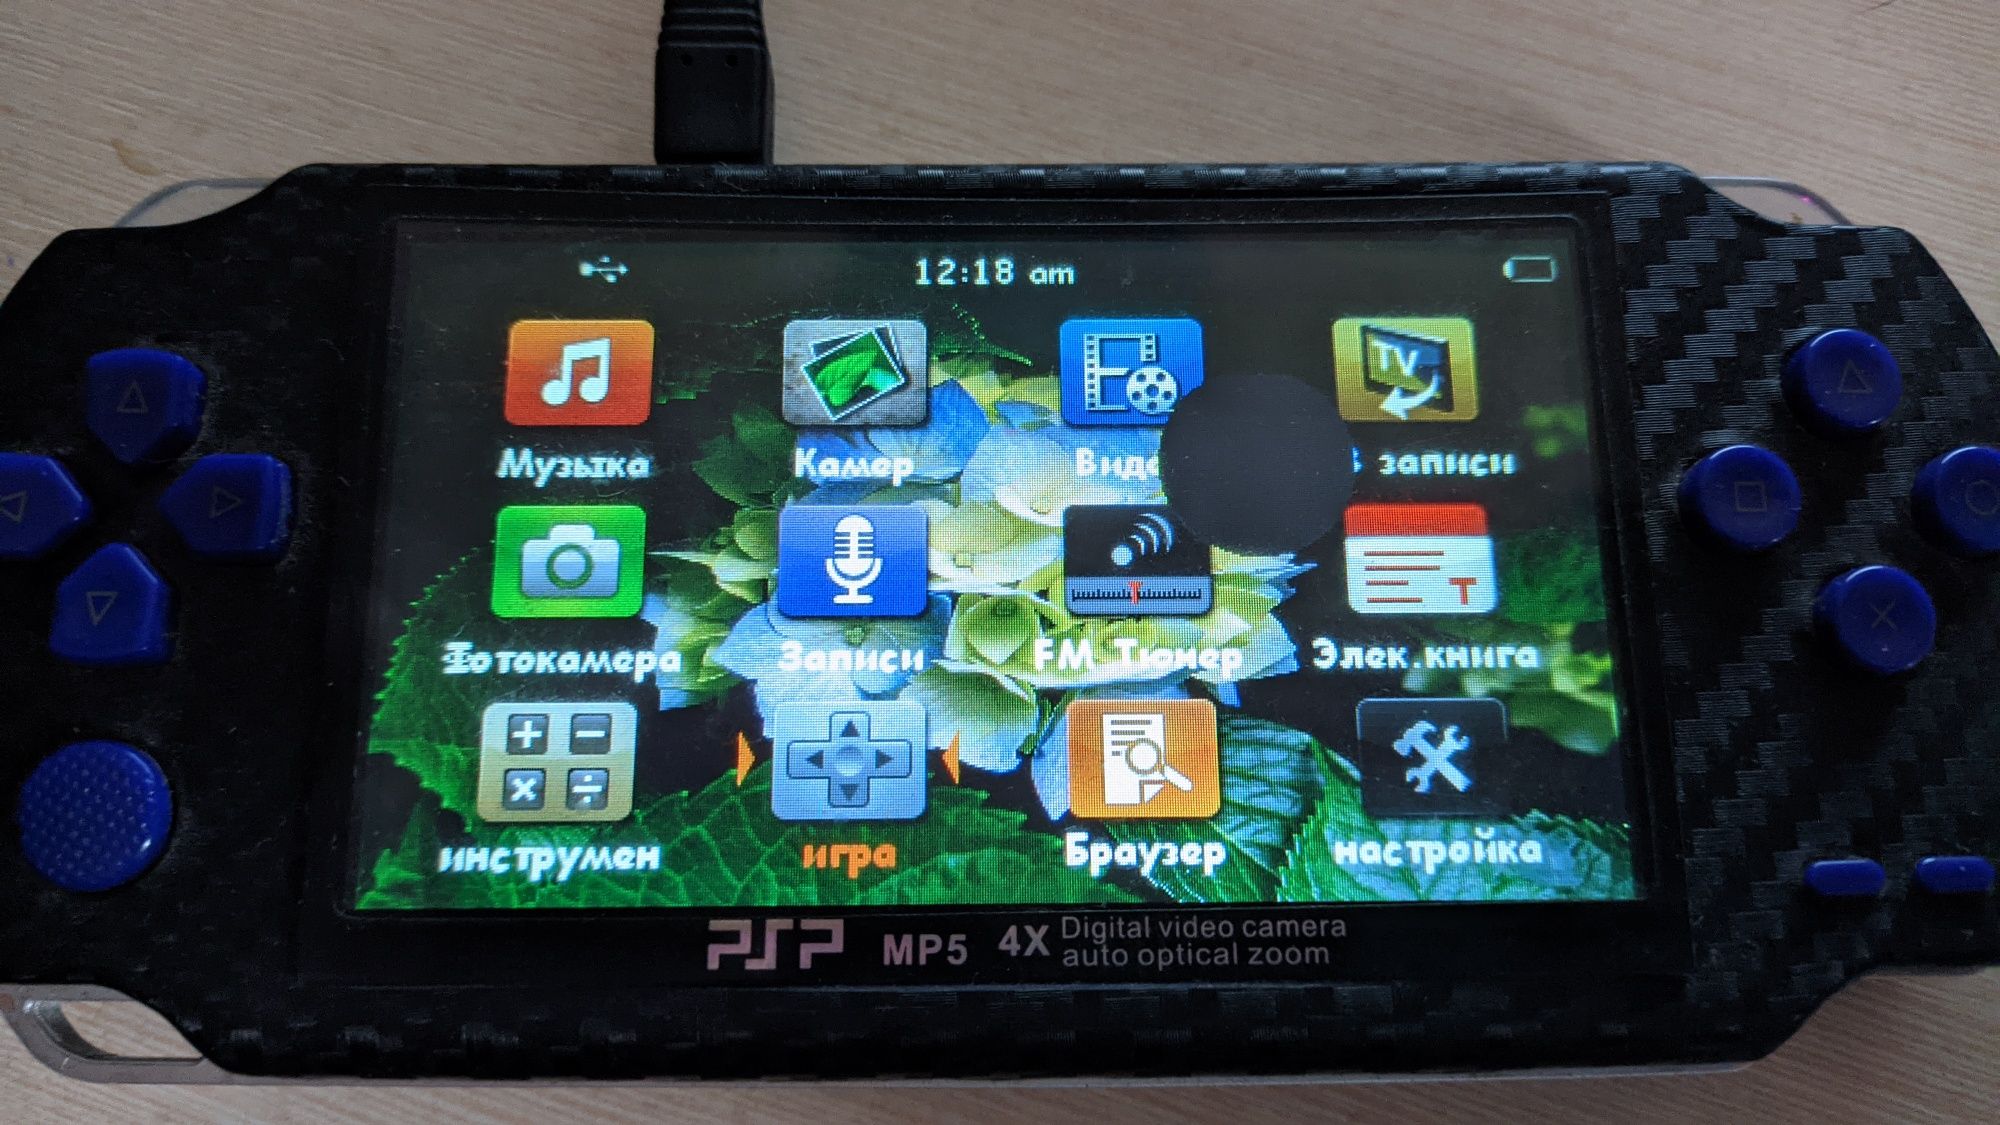 PSP MP5 игровая приставка